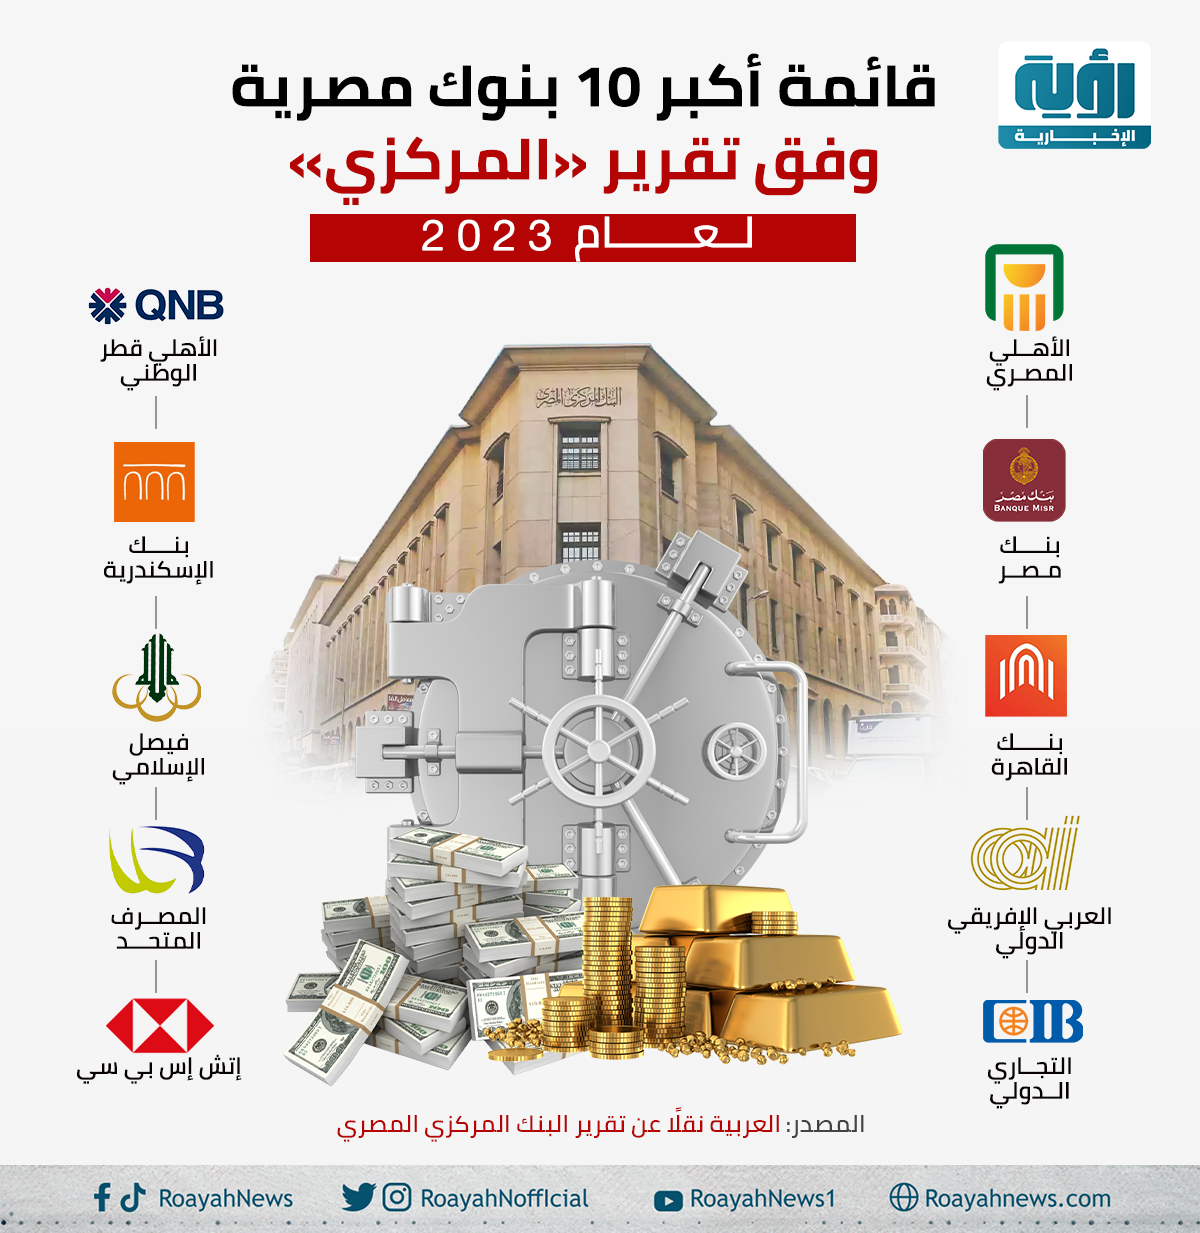 قائمة أكبر 10 بنوك مصرية وفق تقرير المركزي لعام 2023